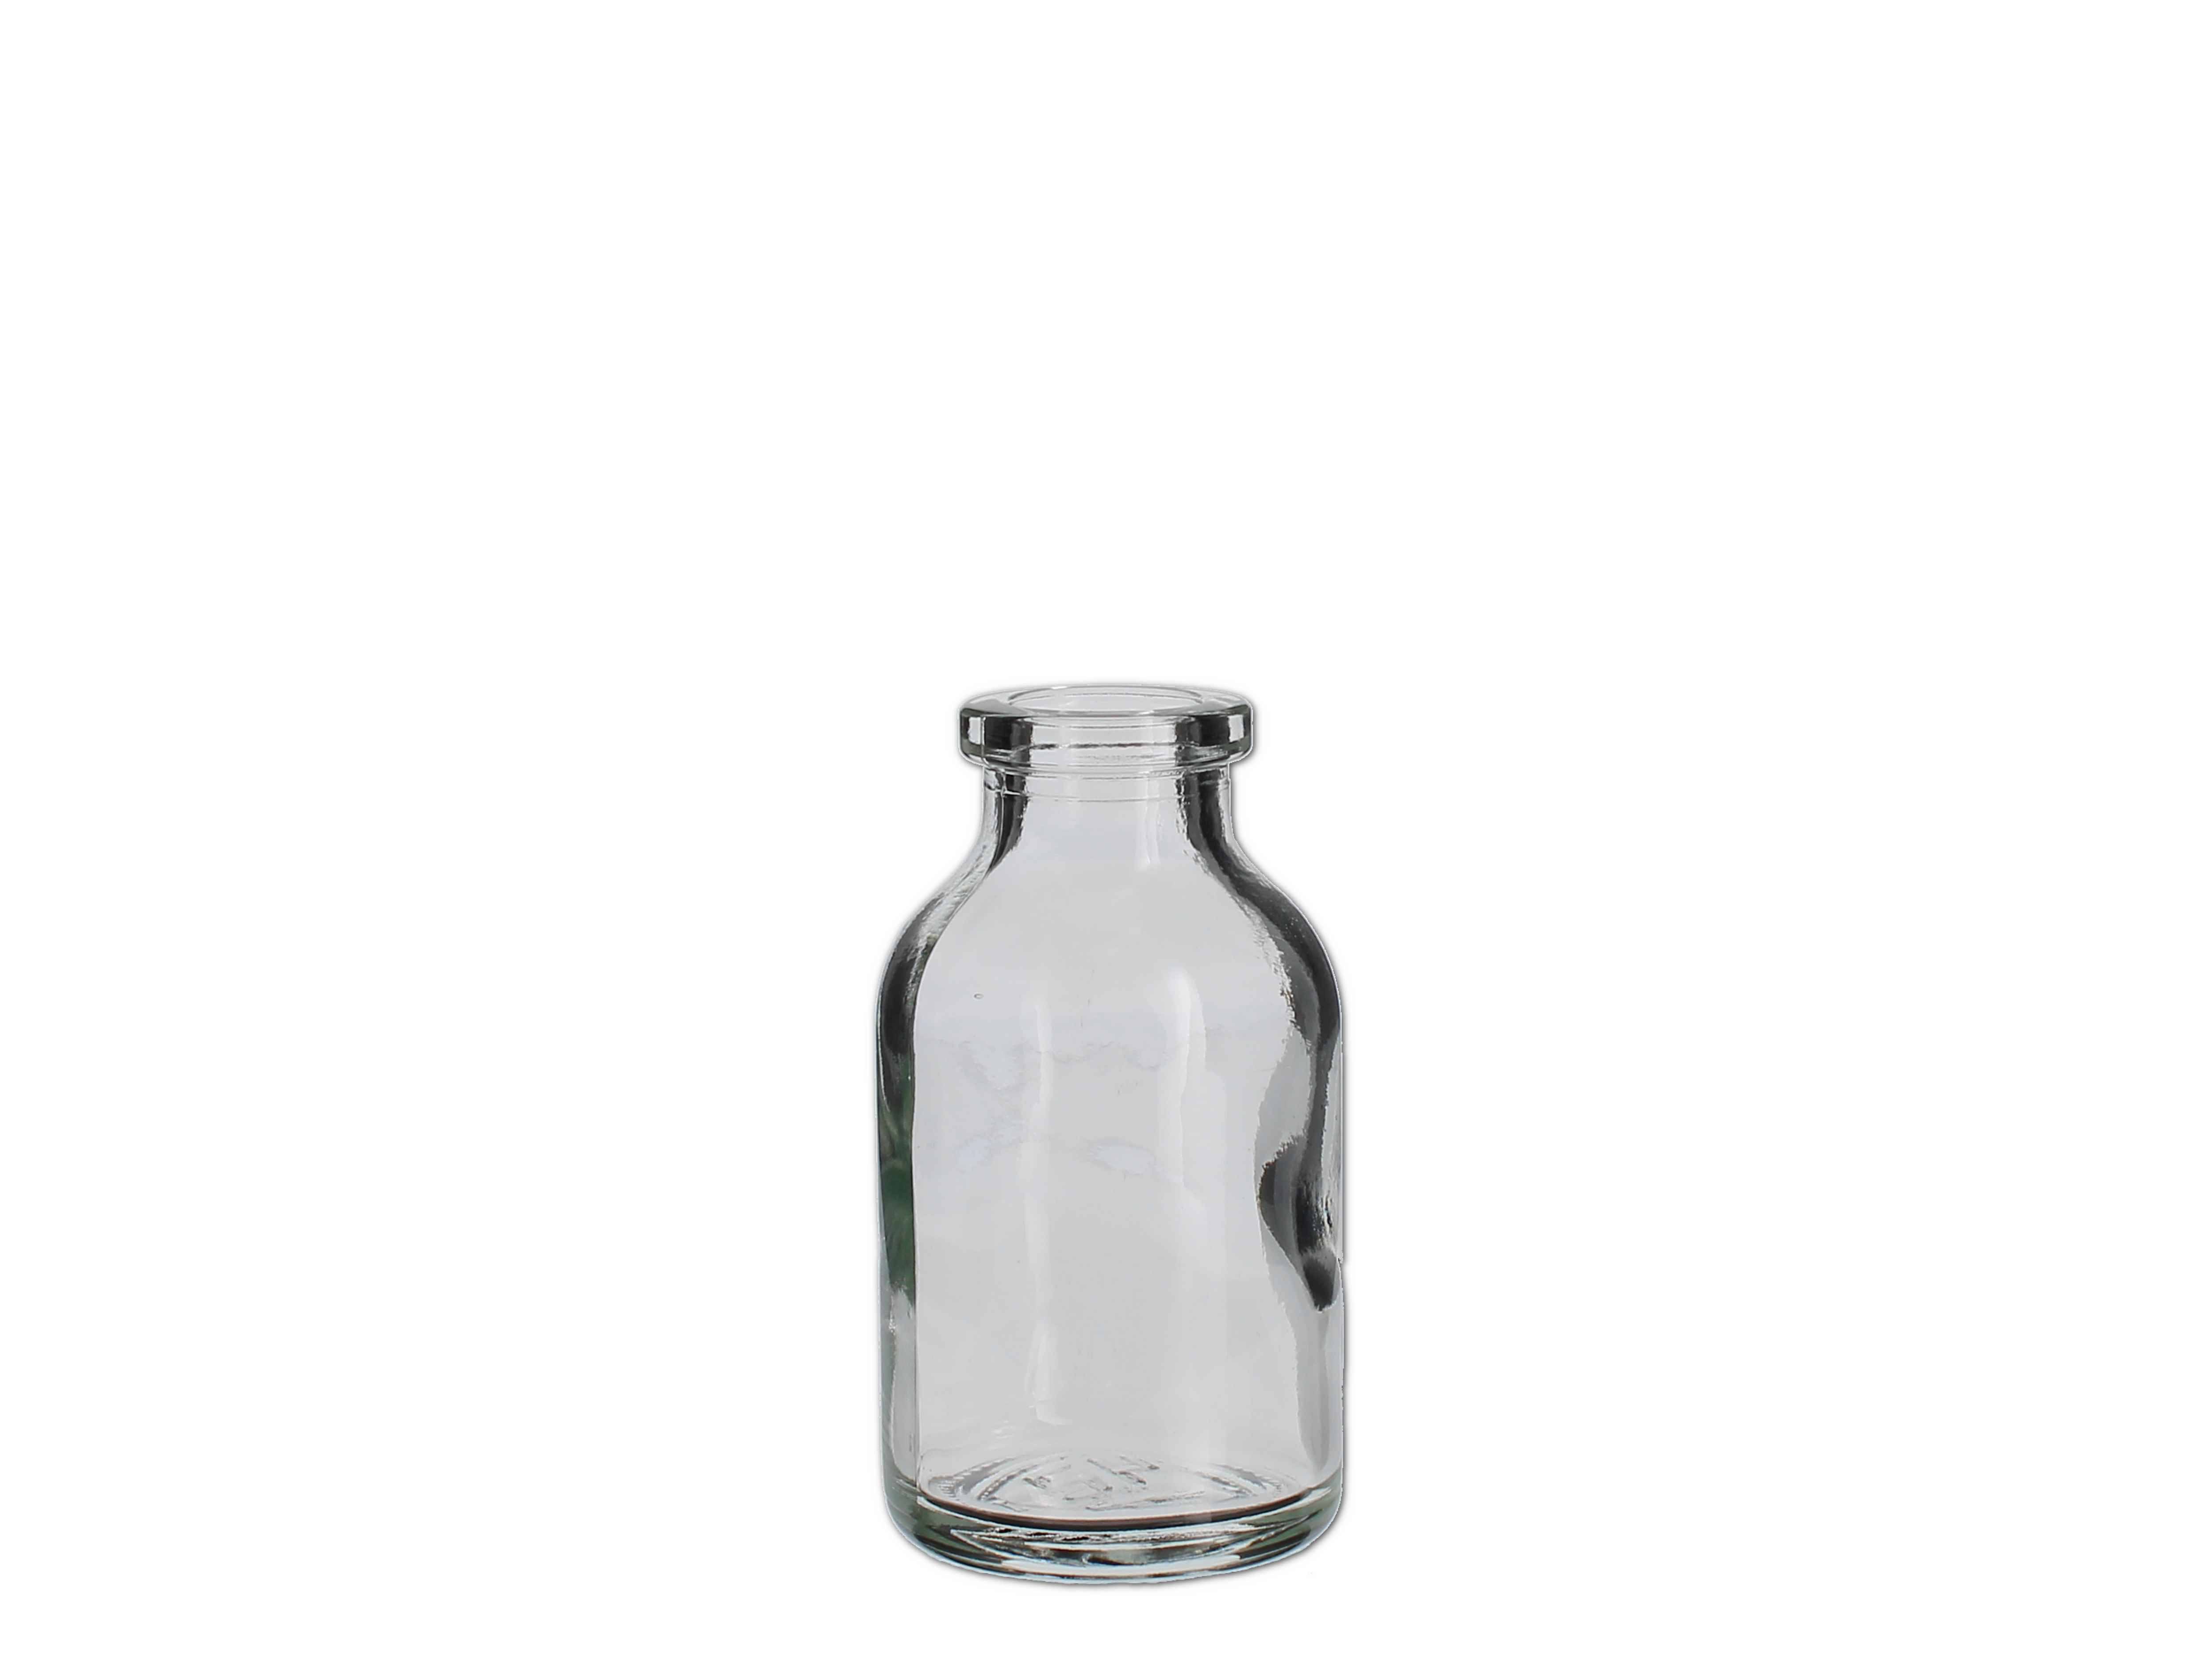    Impfstoff-Flasche weiß (bauchig) - 20ml